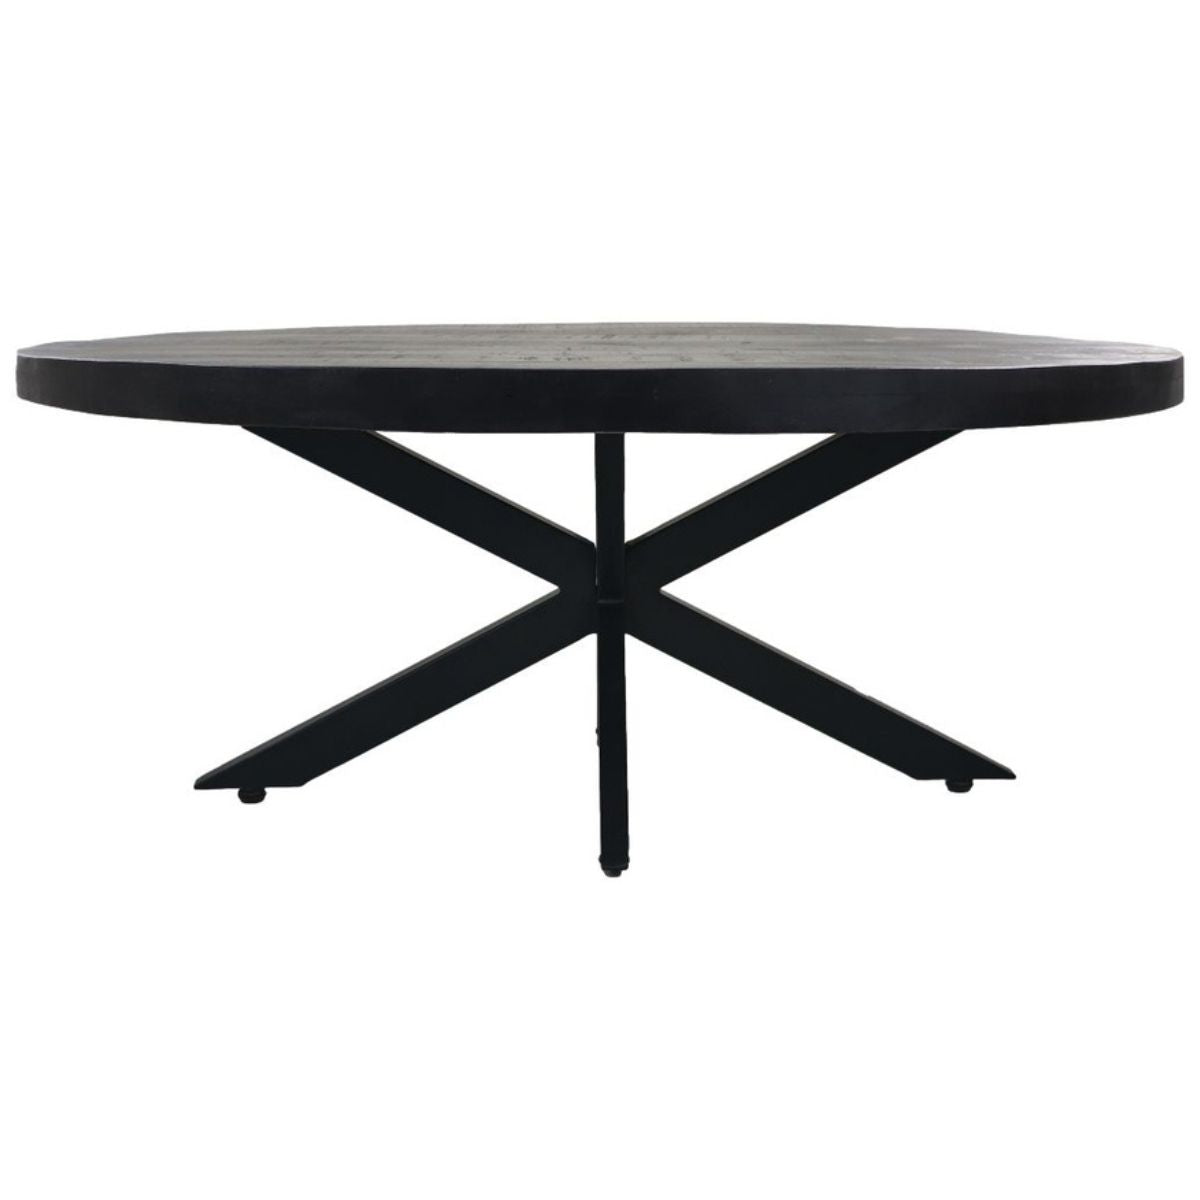 Unieke ovale salontafel, mangohout en metaal, een stijlvol statement voor jouw interieur.